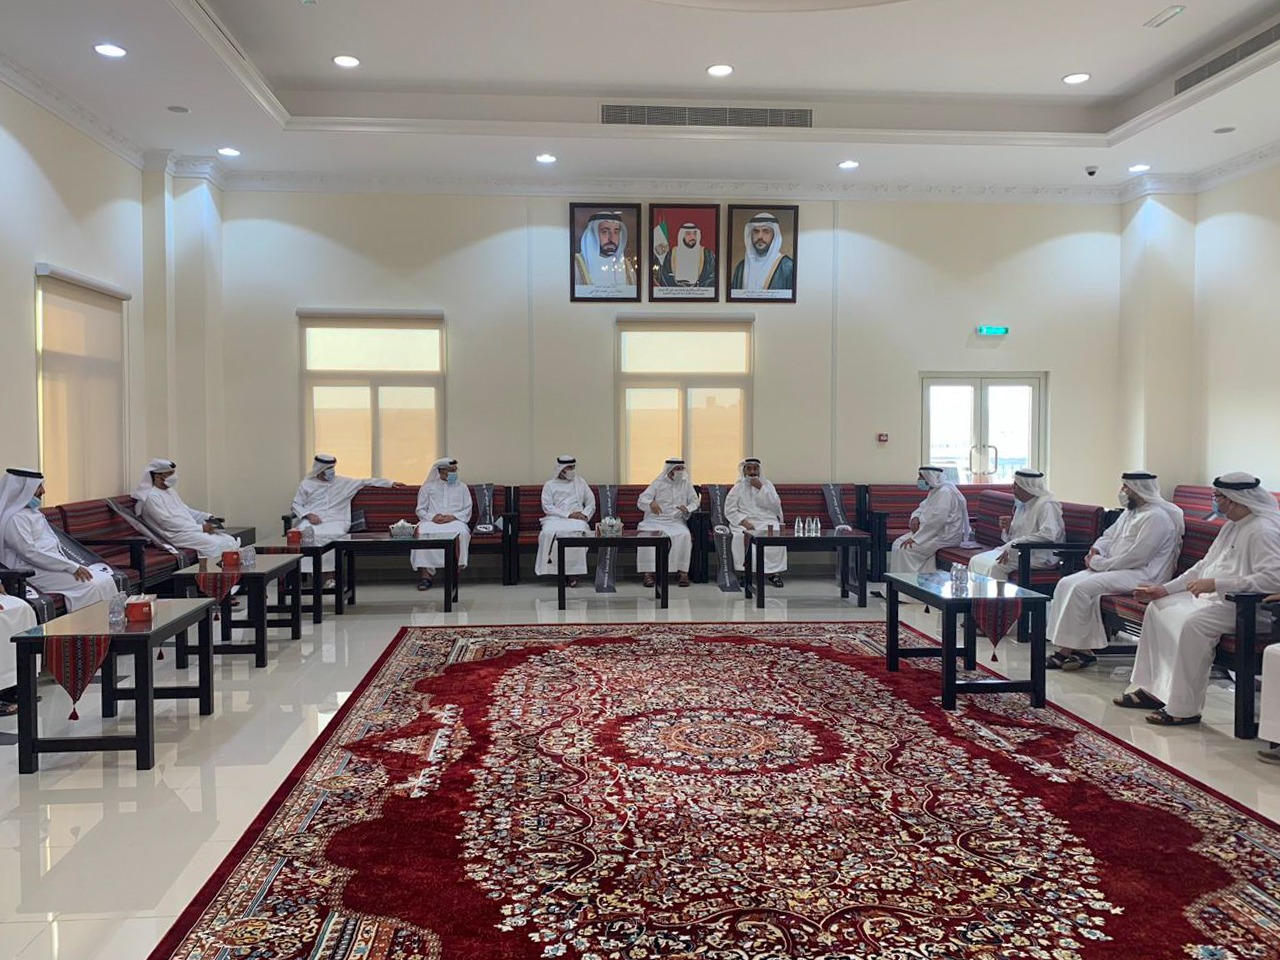 مجلس دبا الحصن يجتمع مع مجلس ضاحية الرحمانية ويؤكد تنسيق الجهود المشتركة والاستفادة من البرامج المطروحة لخدمة المجتمع 